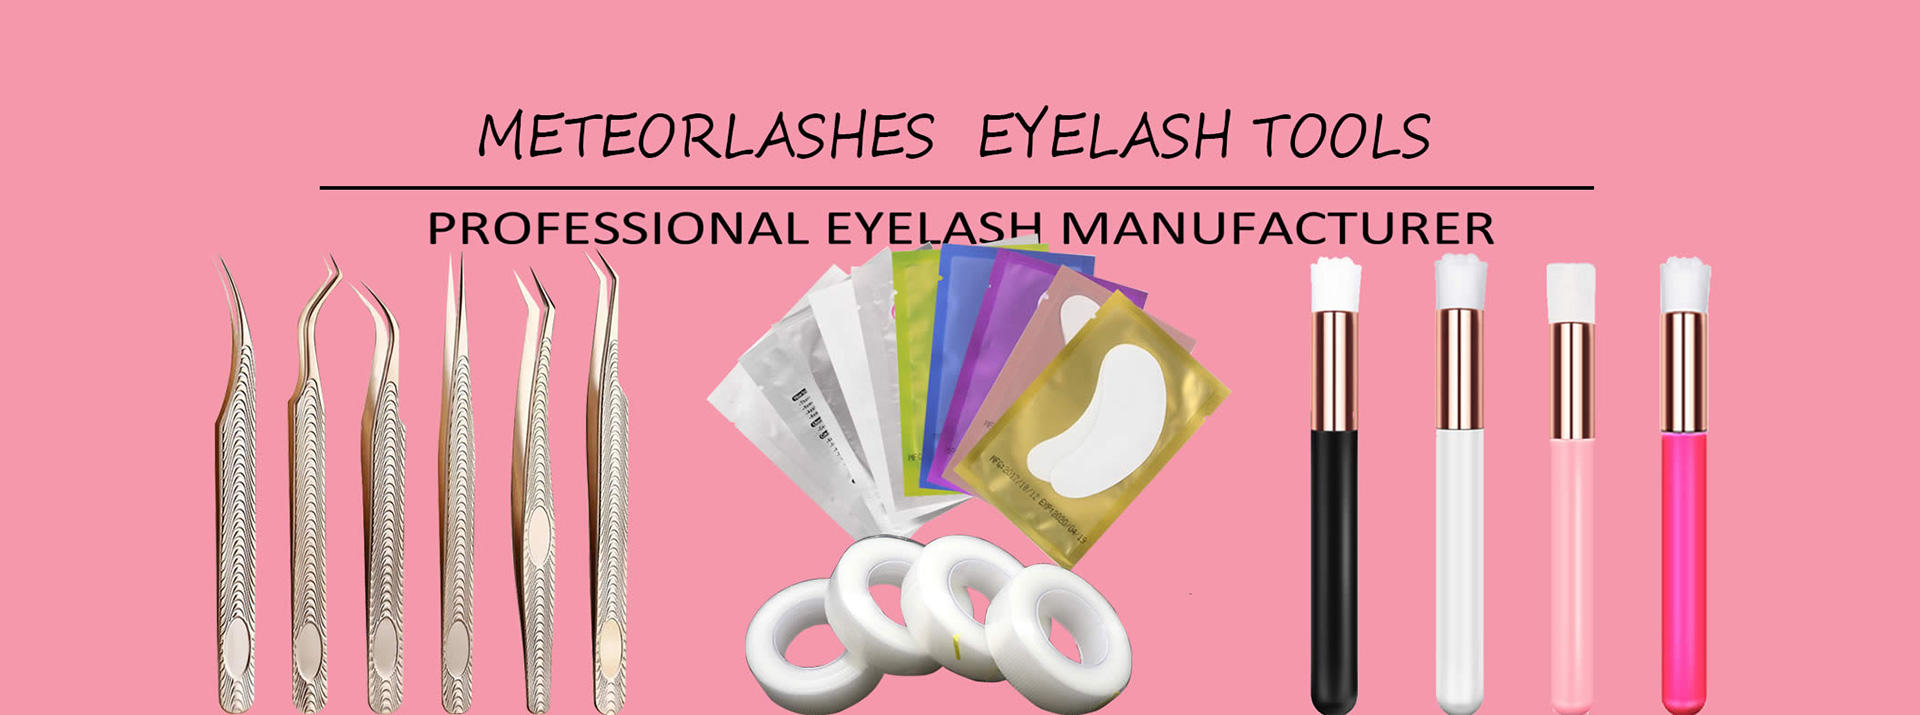 Eyelash Extension Tools